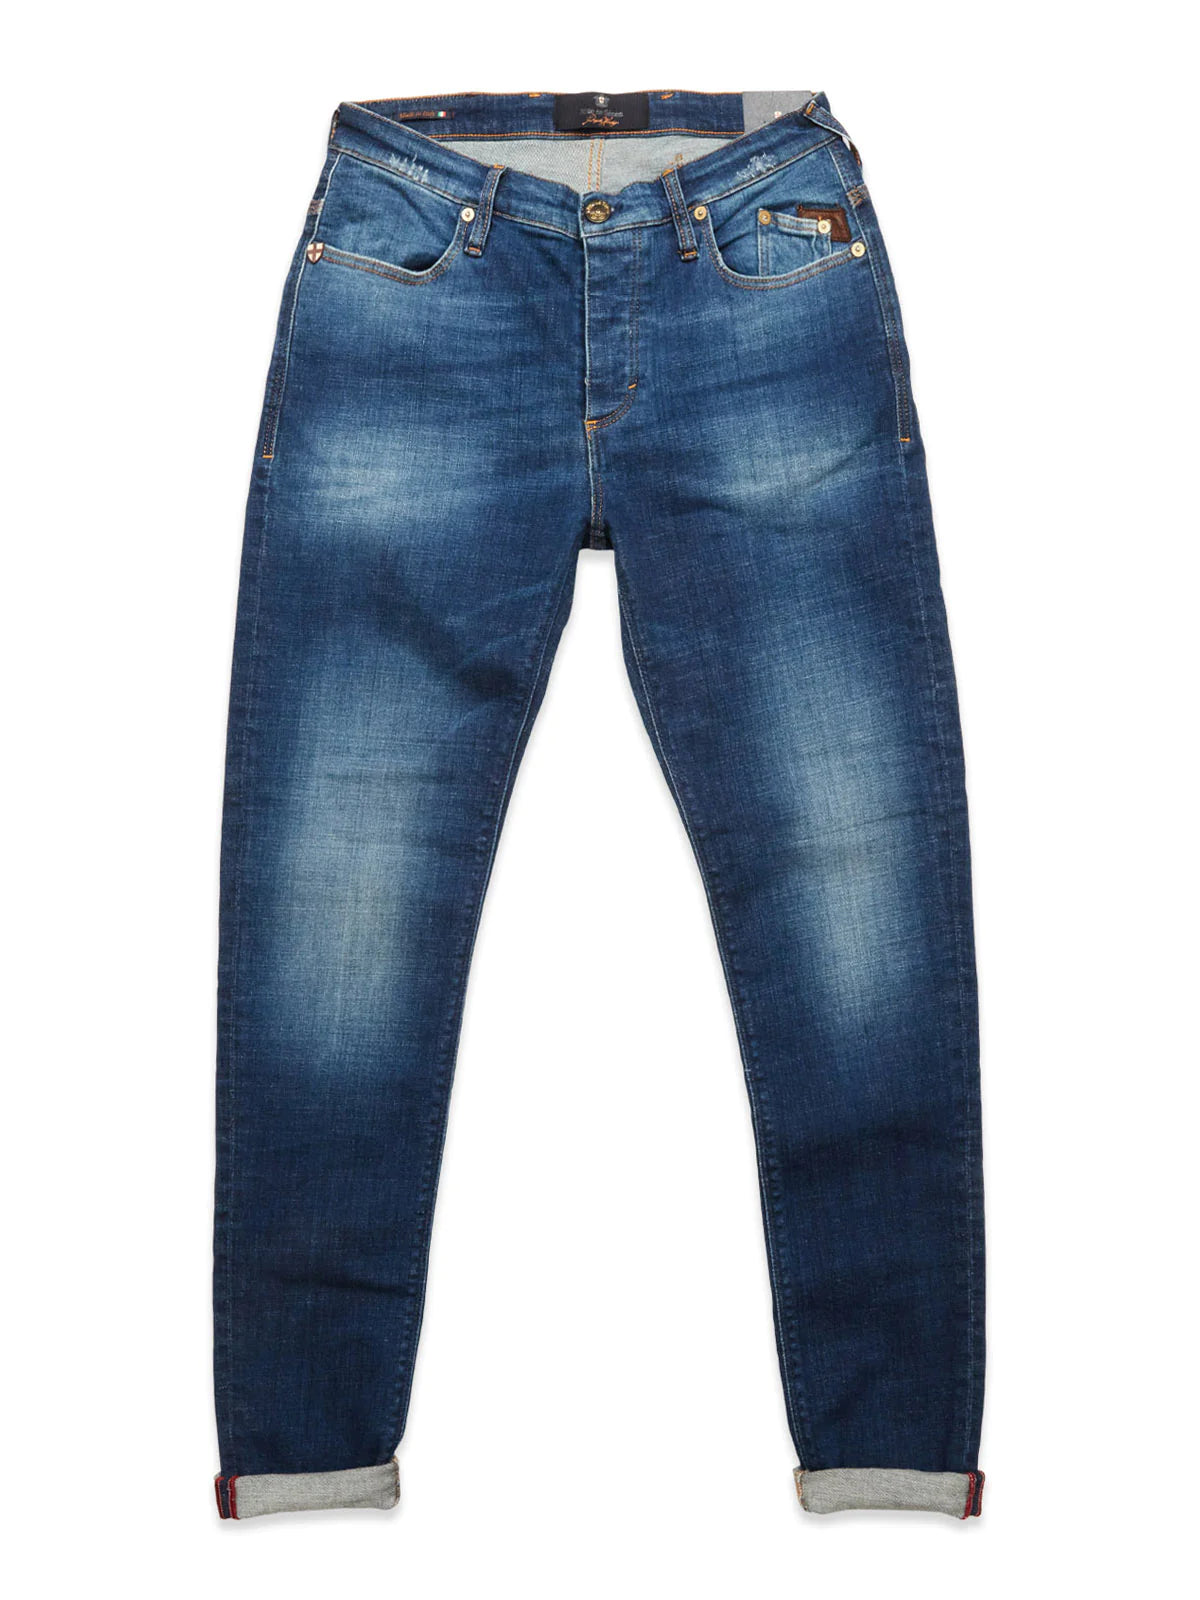 Blue de Genes 5 Pocket Jeans - Jeans